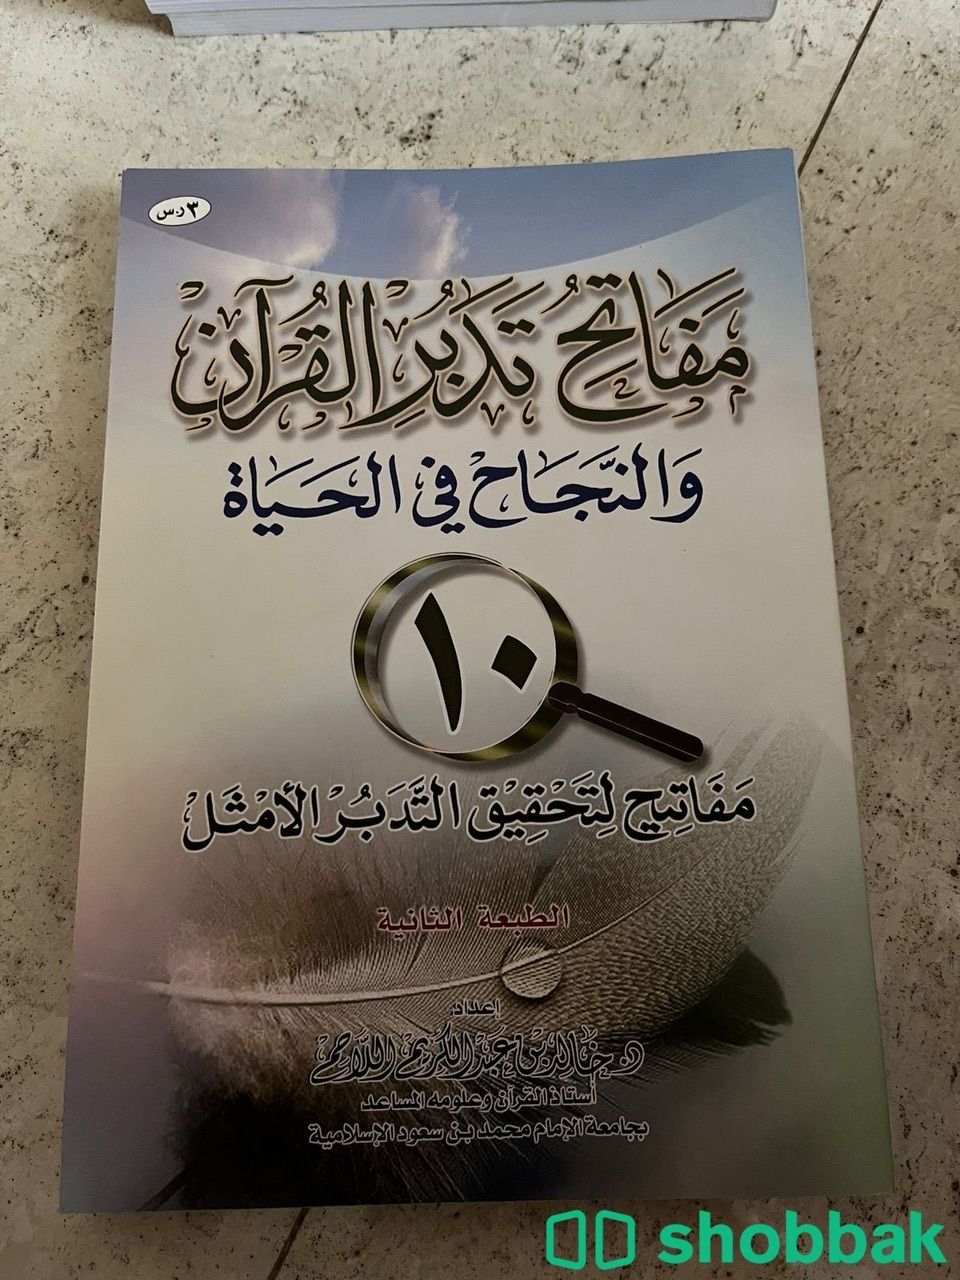 كتب دينية و تطويرية متنوعة شباك السعودية